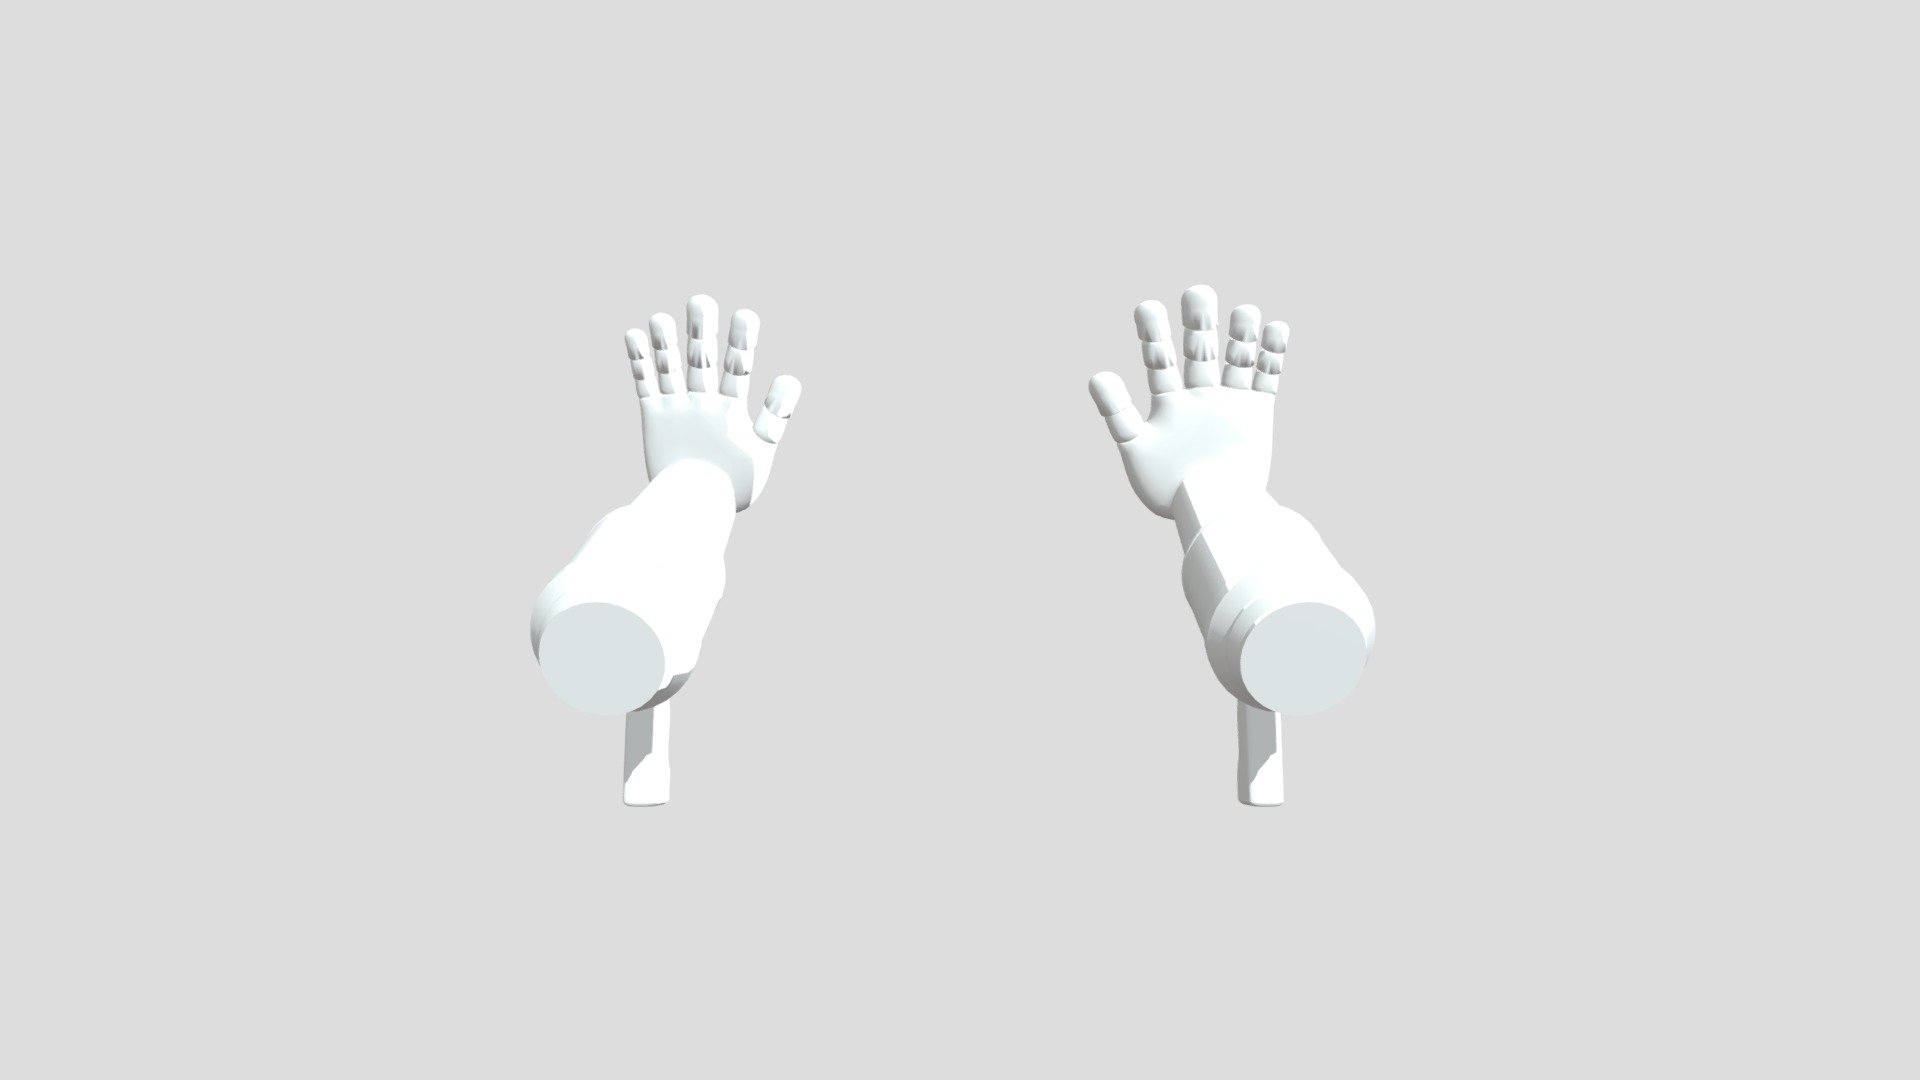 GrabPack - 3D model by RobbinBob (@RobbinBob) [77a5cb5]